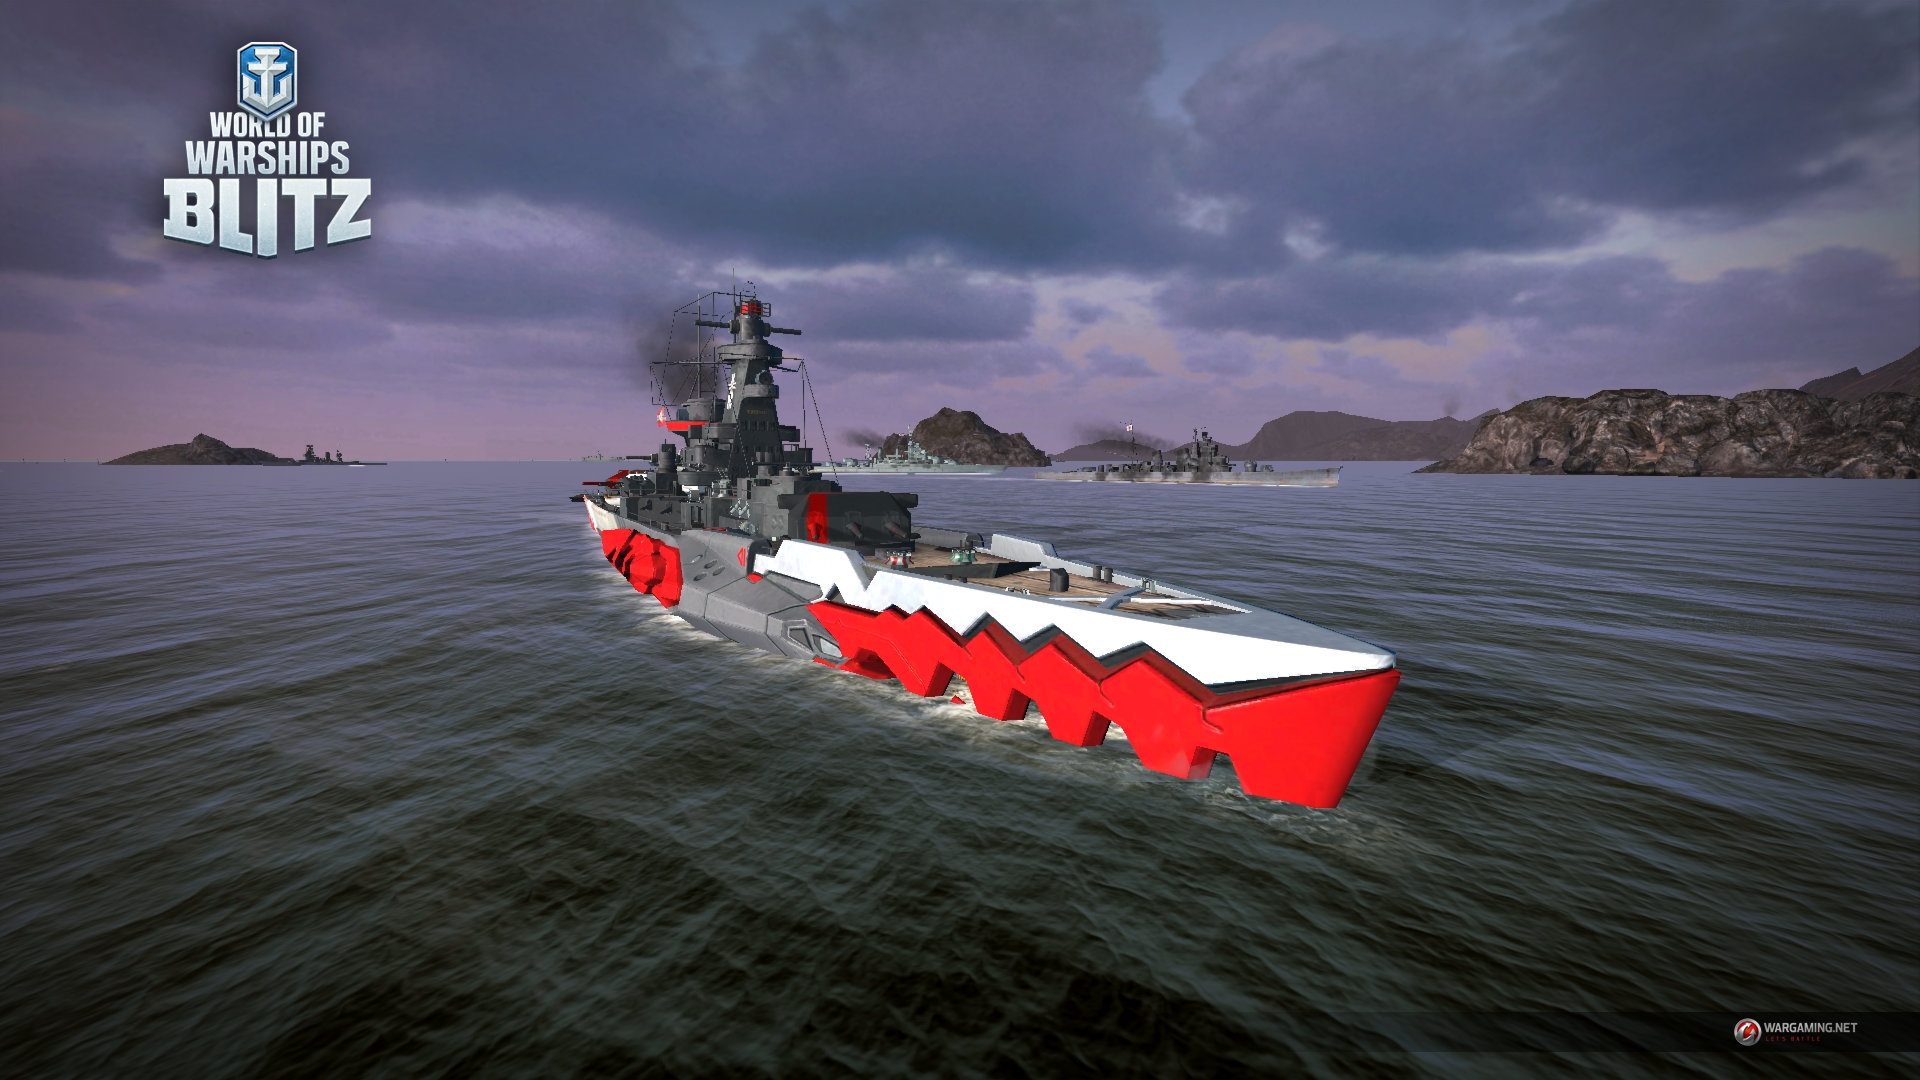 azur lane world of warships reddit